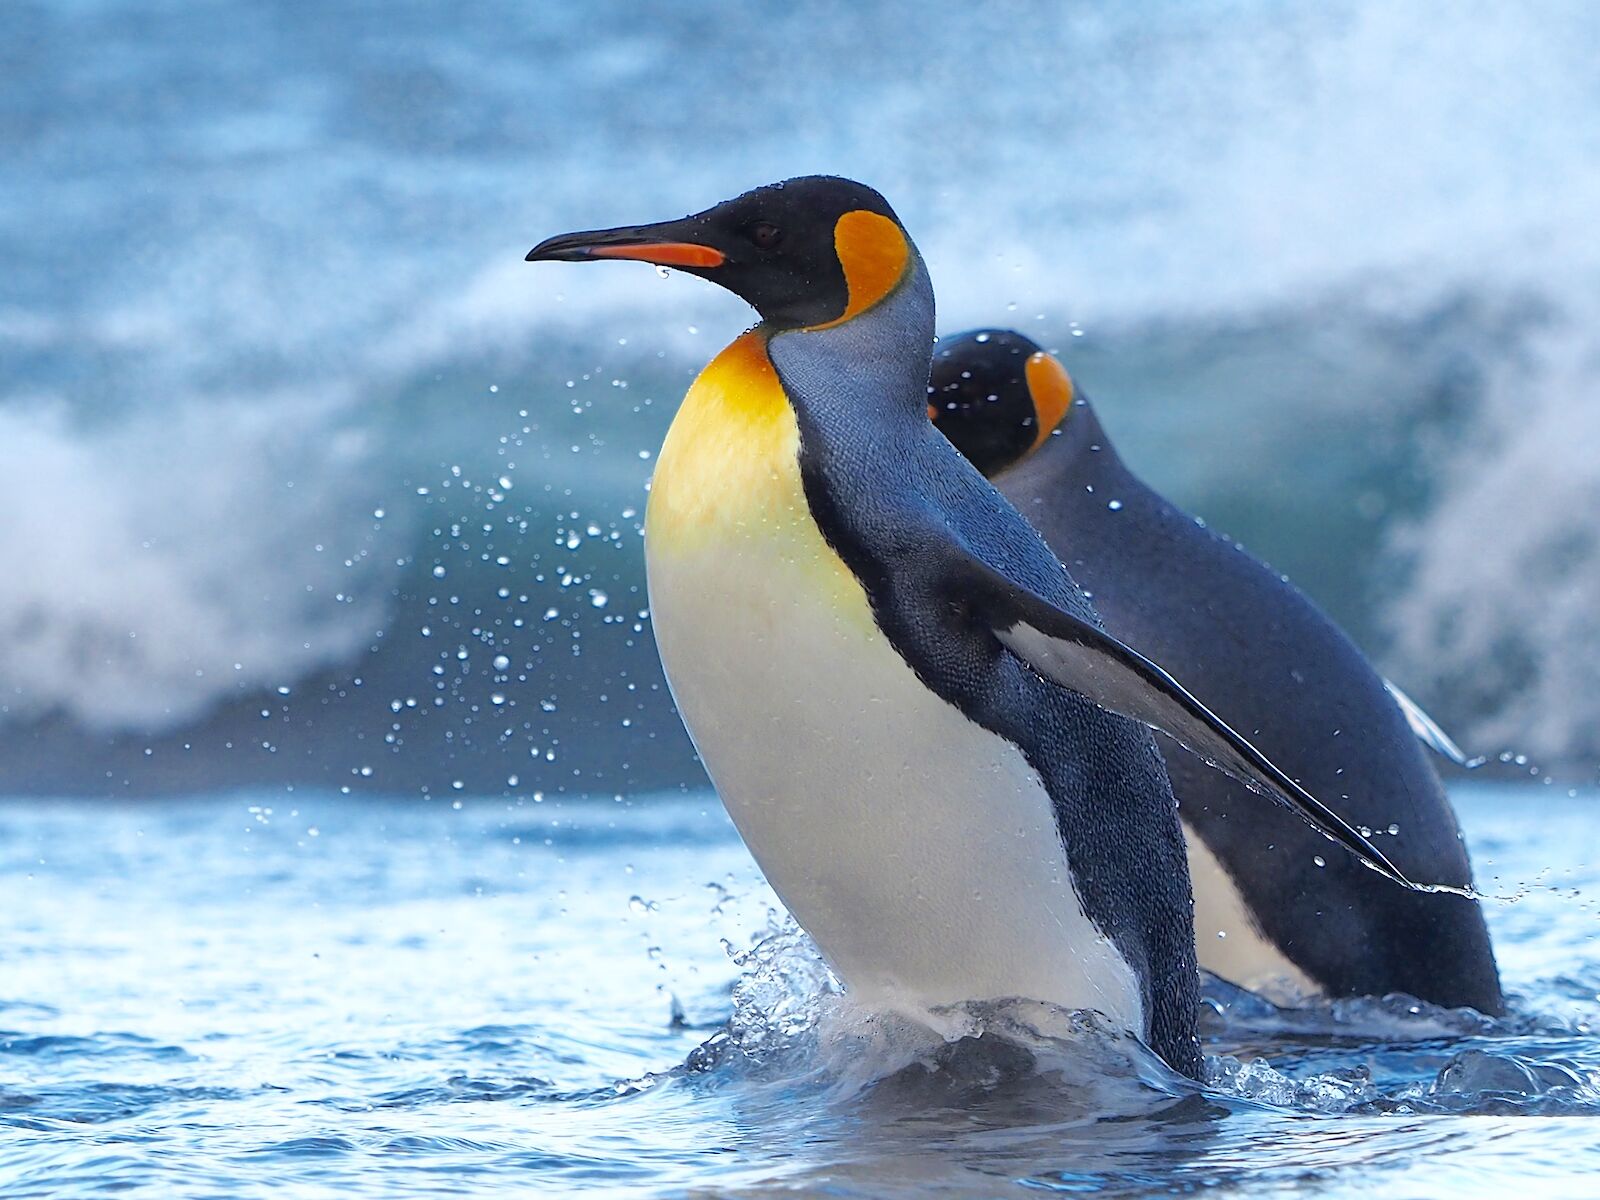 البطريق والمناخ في بؤرة اهتمام معاهدة القارة القطبية الجنوبية